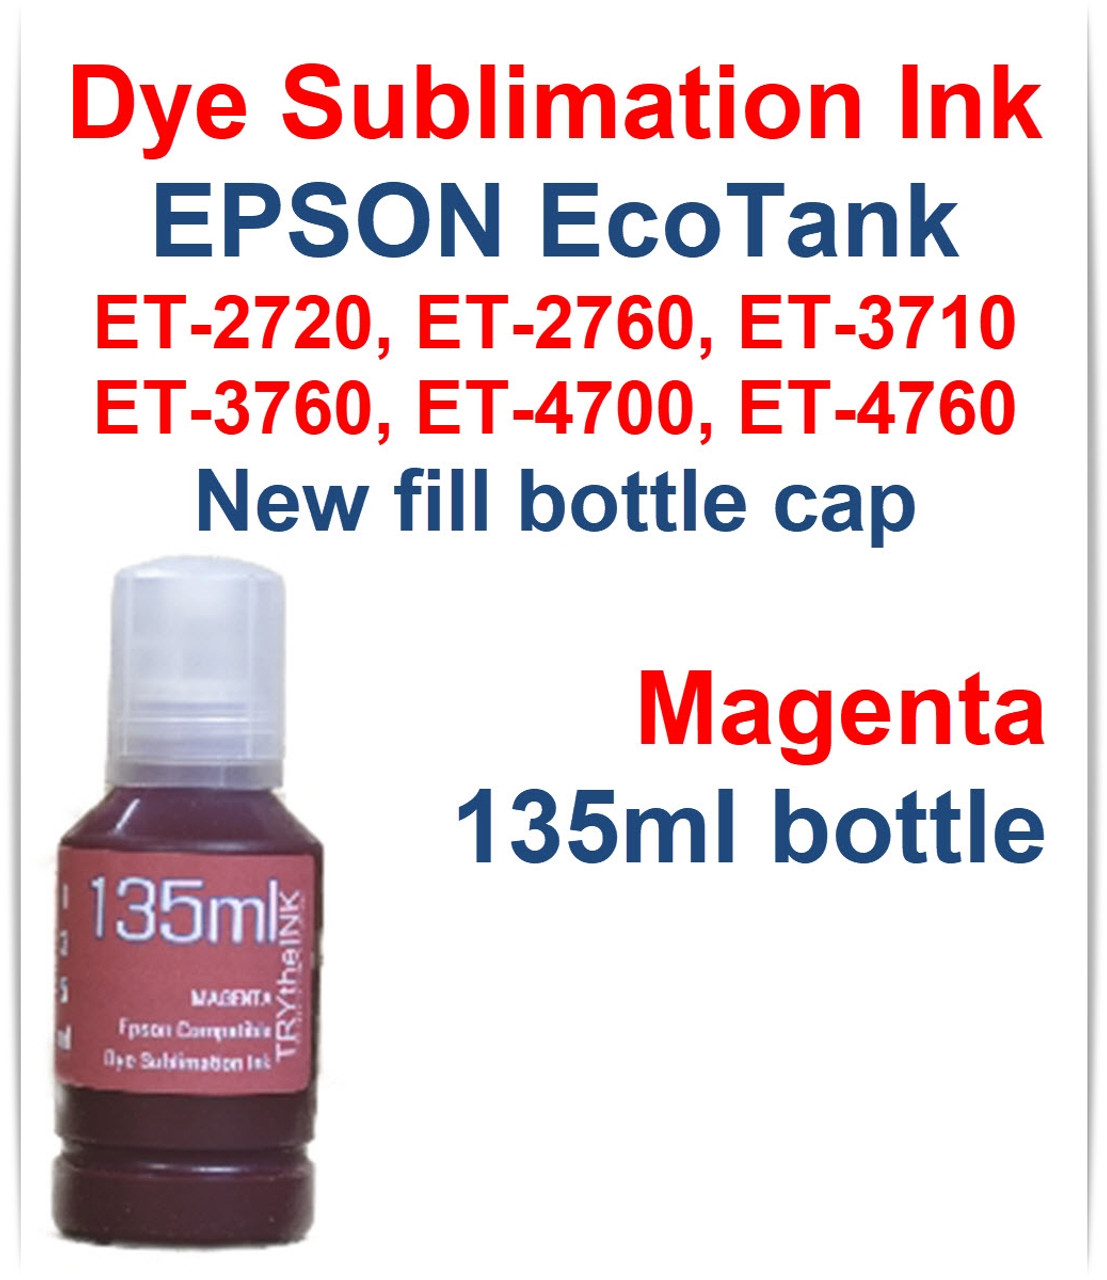 Magenta 135ml bottle Dye Sublimation Ink for EPSON EcoTank ET-2720 ET-2760 Printer